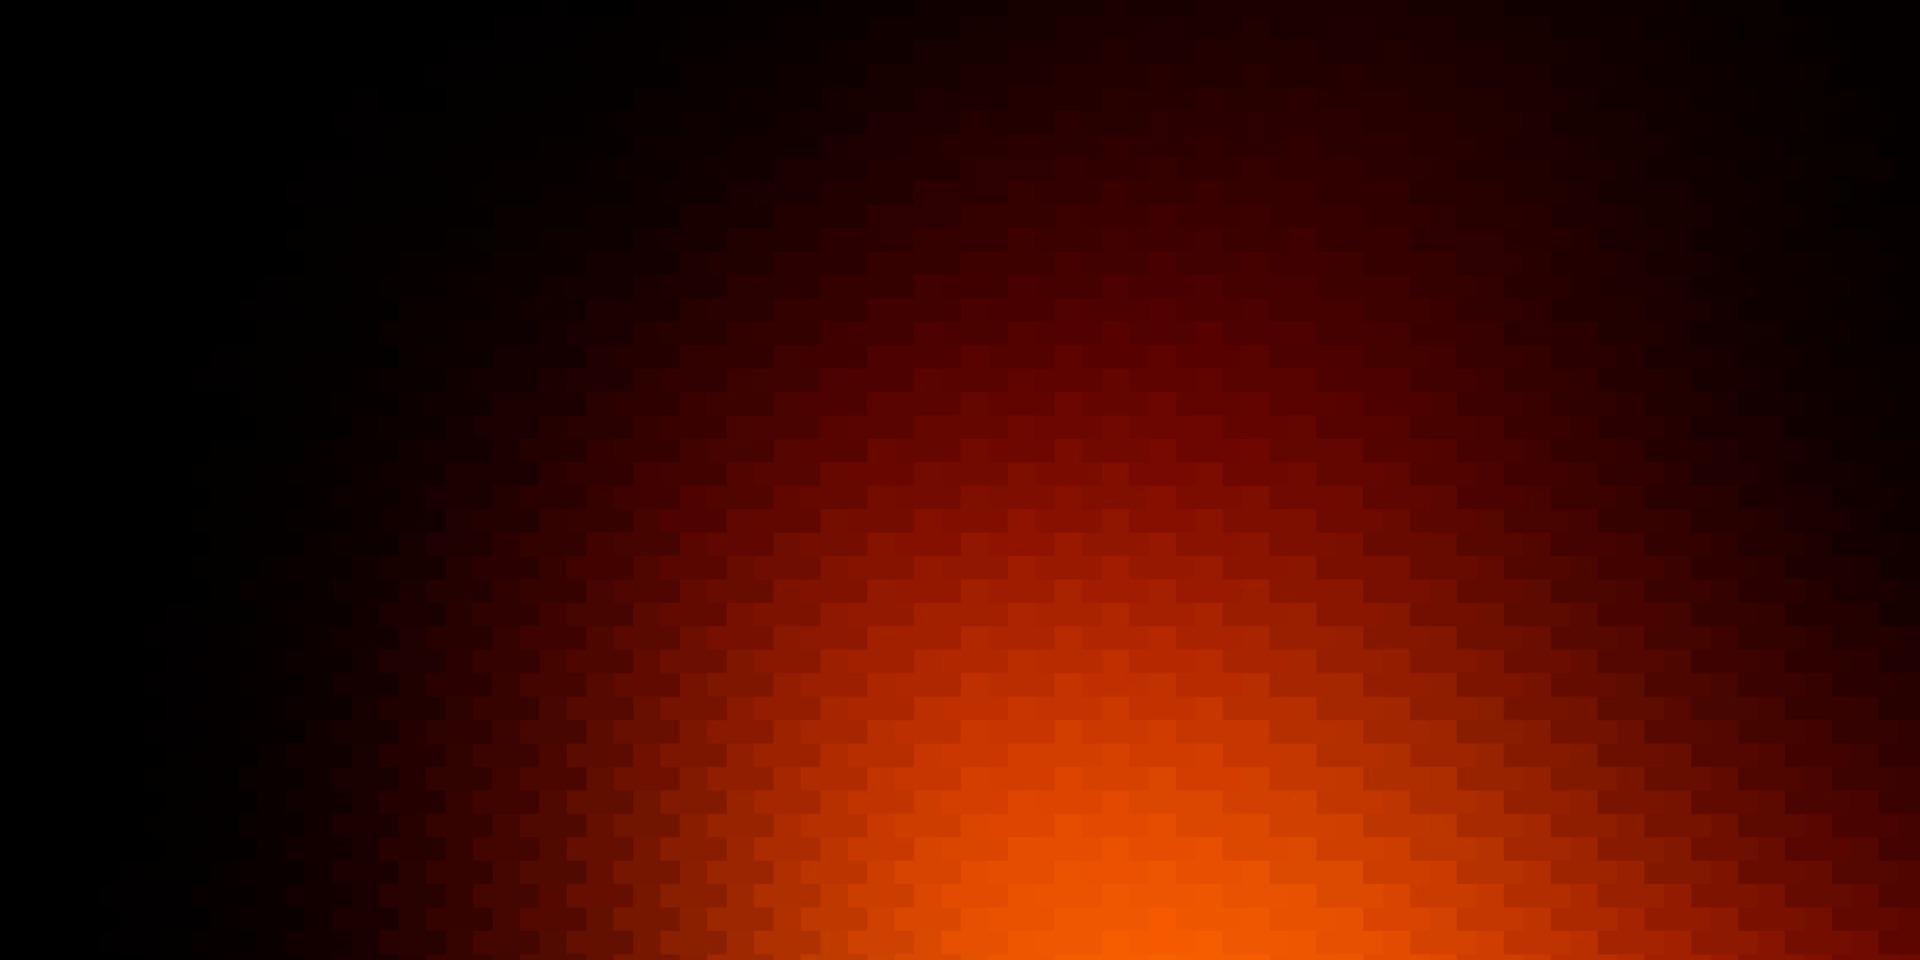 Telón de fondo de vector naranja oscuro con rectángulos.